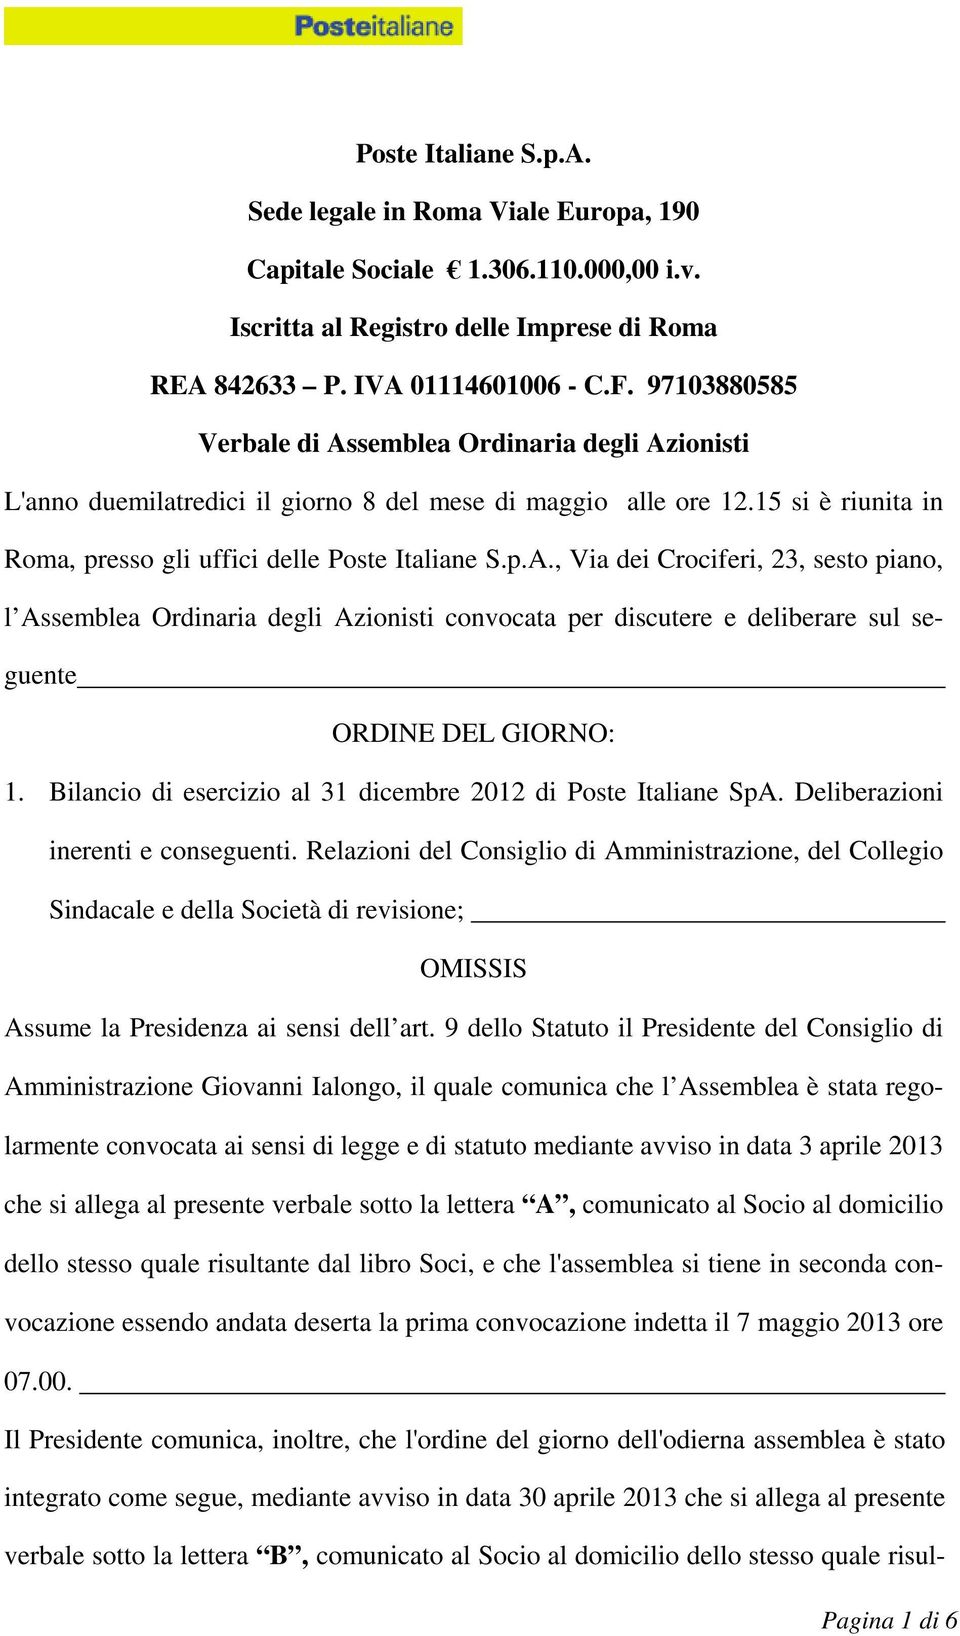 Bilancio di esercizio al 31 dicembre 2012 di Poste Italiane SpA. Deliberazioni inerenti e conseguenti.